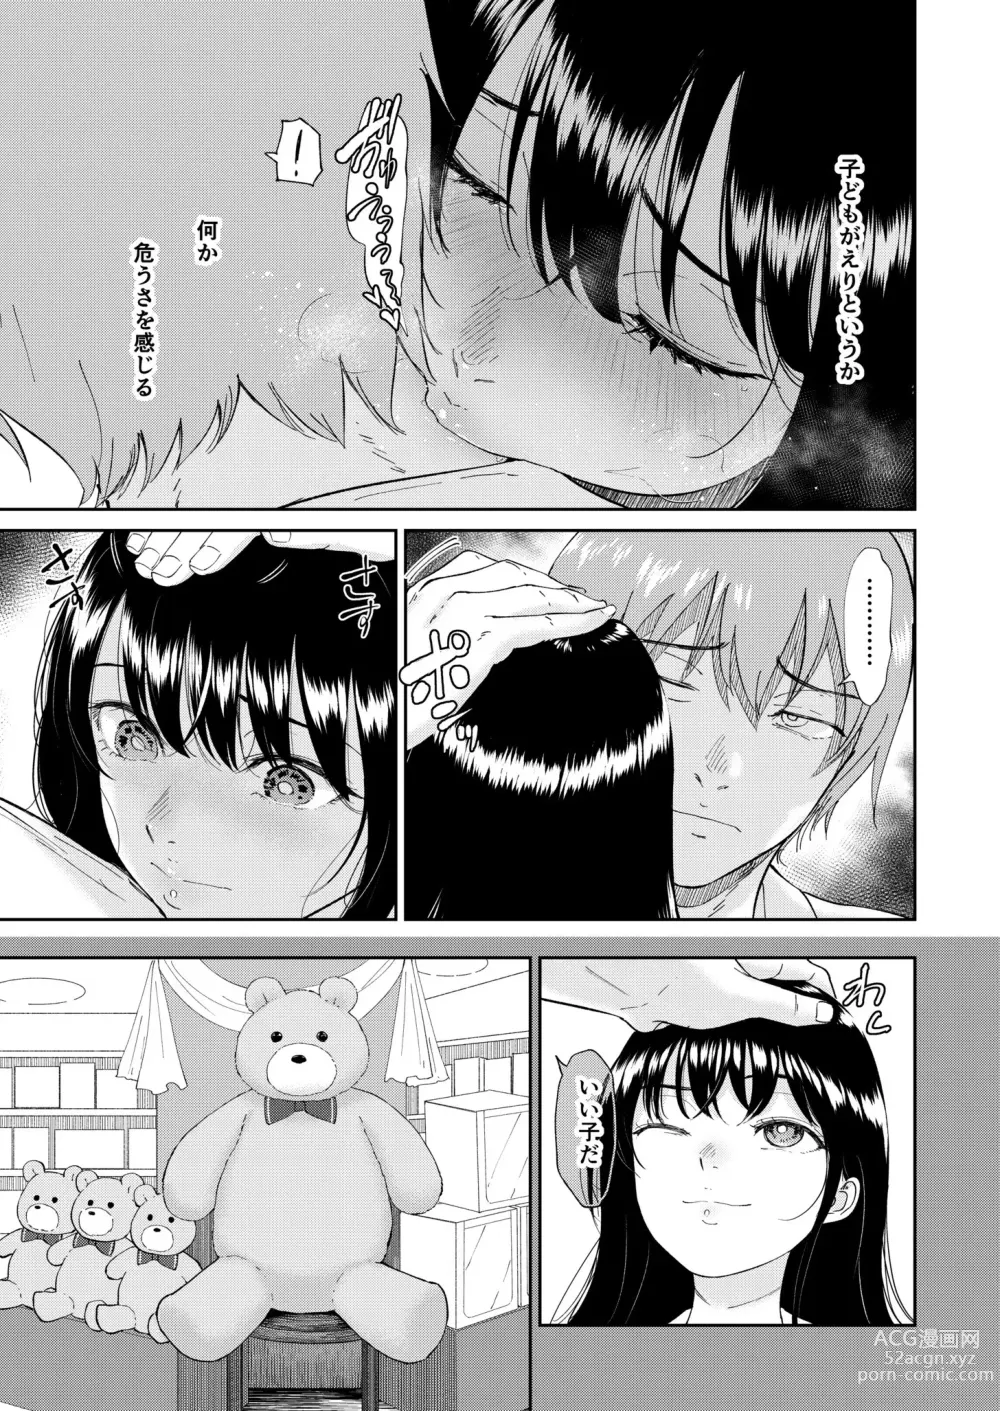 Page 5 of manga Iinarikko 5